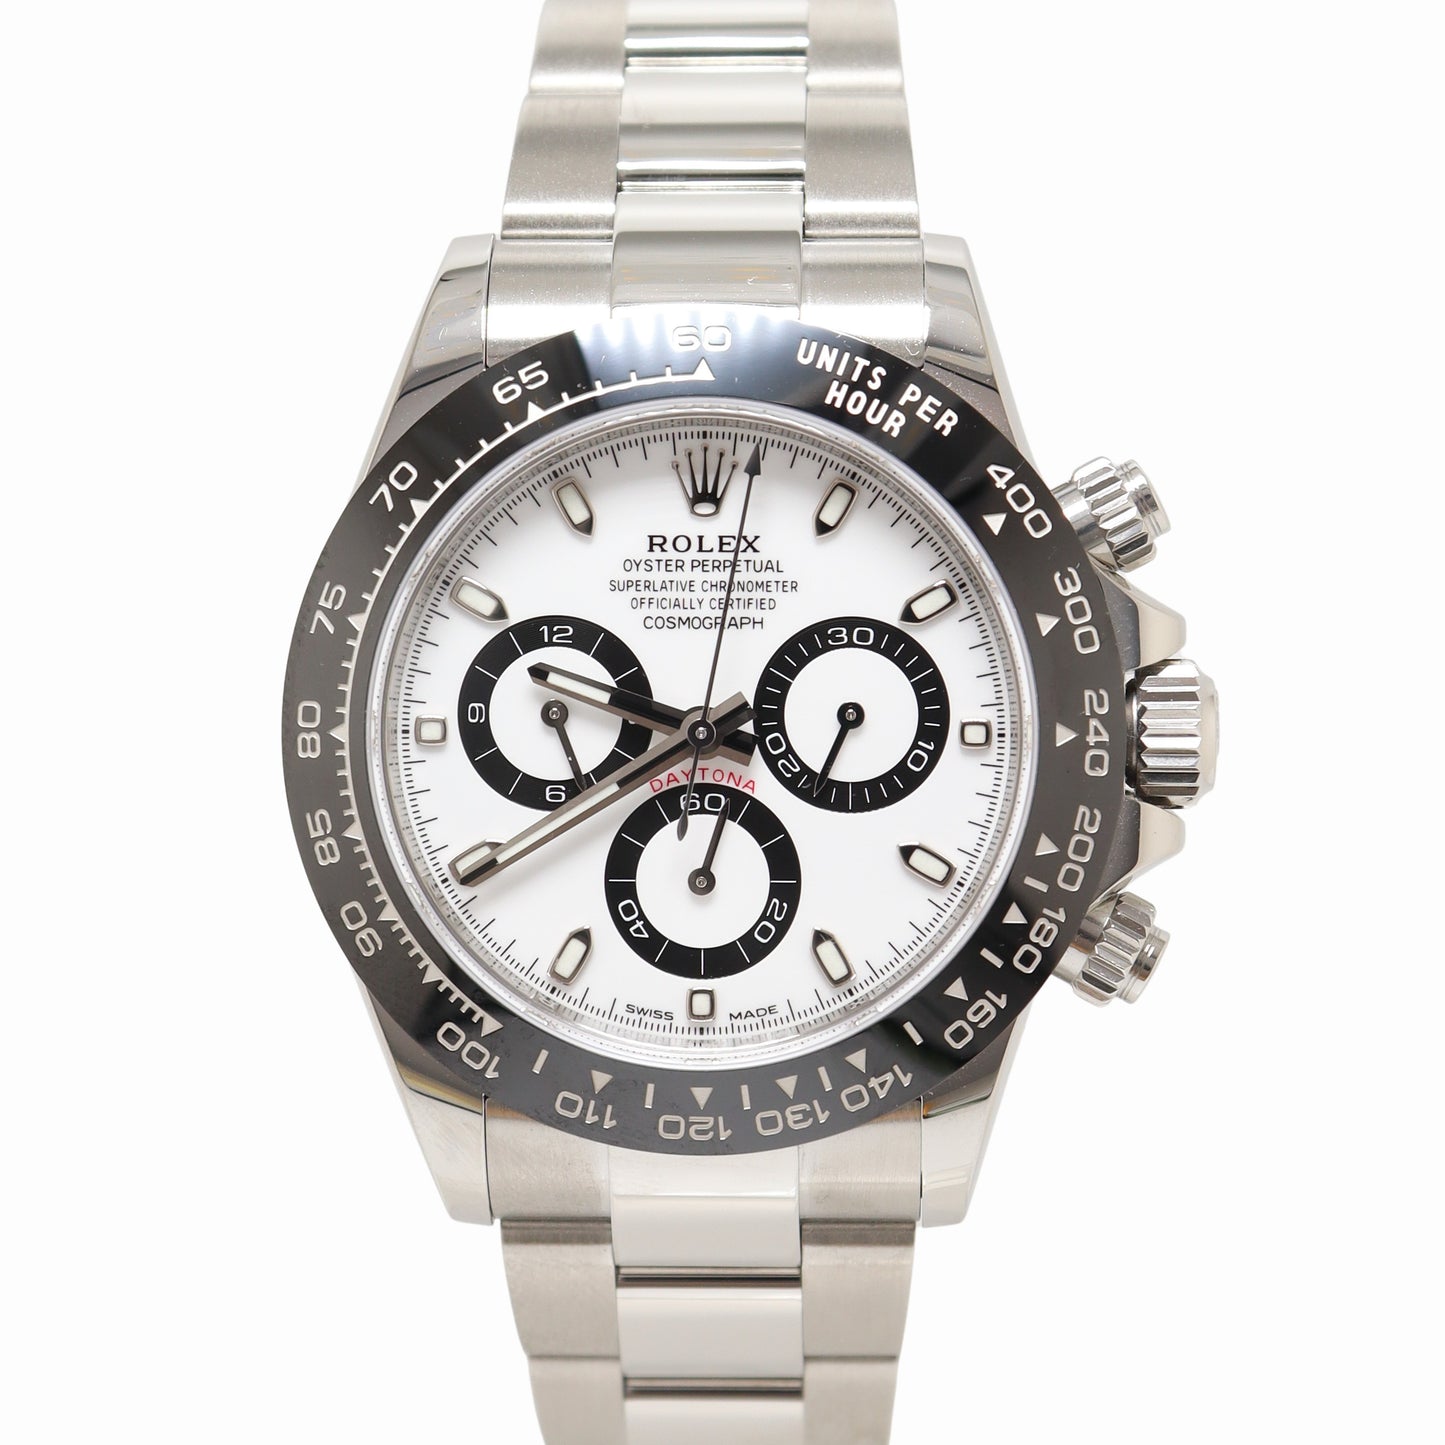 Rolex Daytona Stainless Steel 40mm White Stick Dial Watch Reference #: 116500LN - Happy Jewelers Fine Jewelry Lifetime Warranty